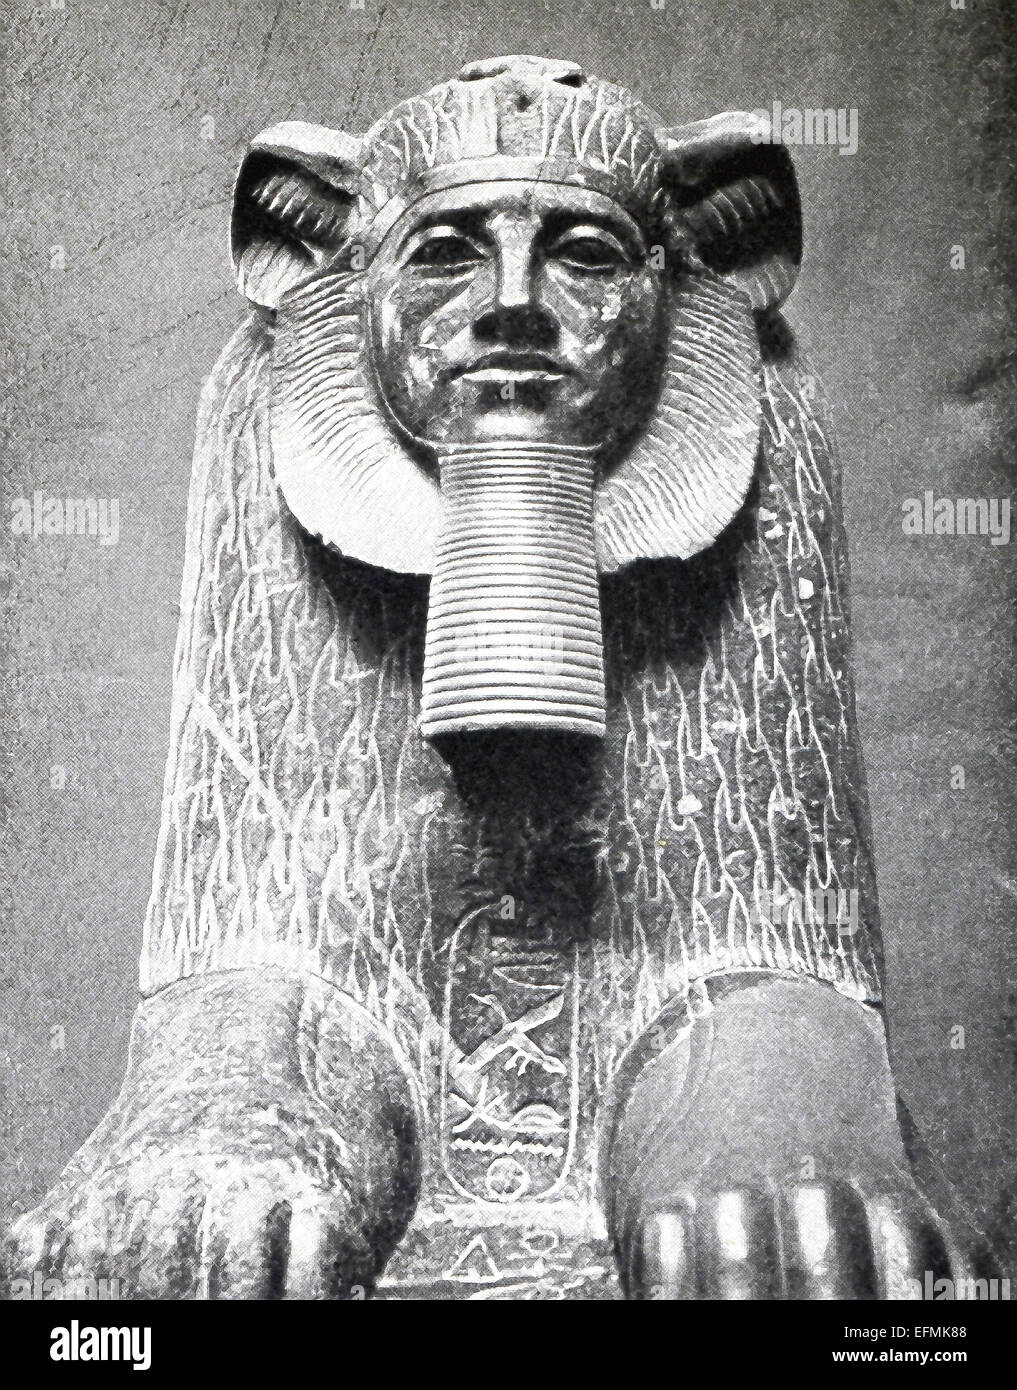 Diese Hyksos Sphinx Ägyptens 12. Dynastie (c. 1991-1786 v. Chr.) stammt und in Tanis gefunden wurde. Die bekannte französische Archäologen Auguste Mariette schrieb im Jahre 1863, dass diese schwarzen Granit Sphinxen "unterscheiden sich von anderen ägyptischen Denkmäler in eine sehr deutliche Art und Weise wie man sieht, durch Vergleich mit der Sphinx Tutmes III und Ramses II. Das Gesicht ist rund, die Augen sind klein, die Nase abgeflacht, die Projektierung, der Unterlippe leicht Fortgeschrittene Backenknochen, die Ohren sind die eines Stiers während die Mähne eines Löwen umkreist das Gesicht. " Stockfoto